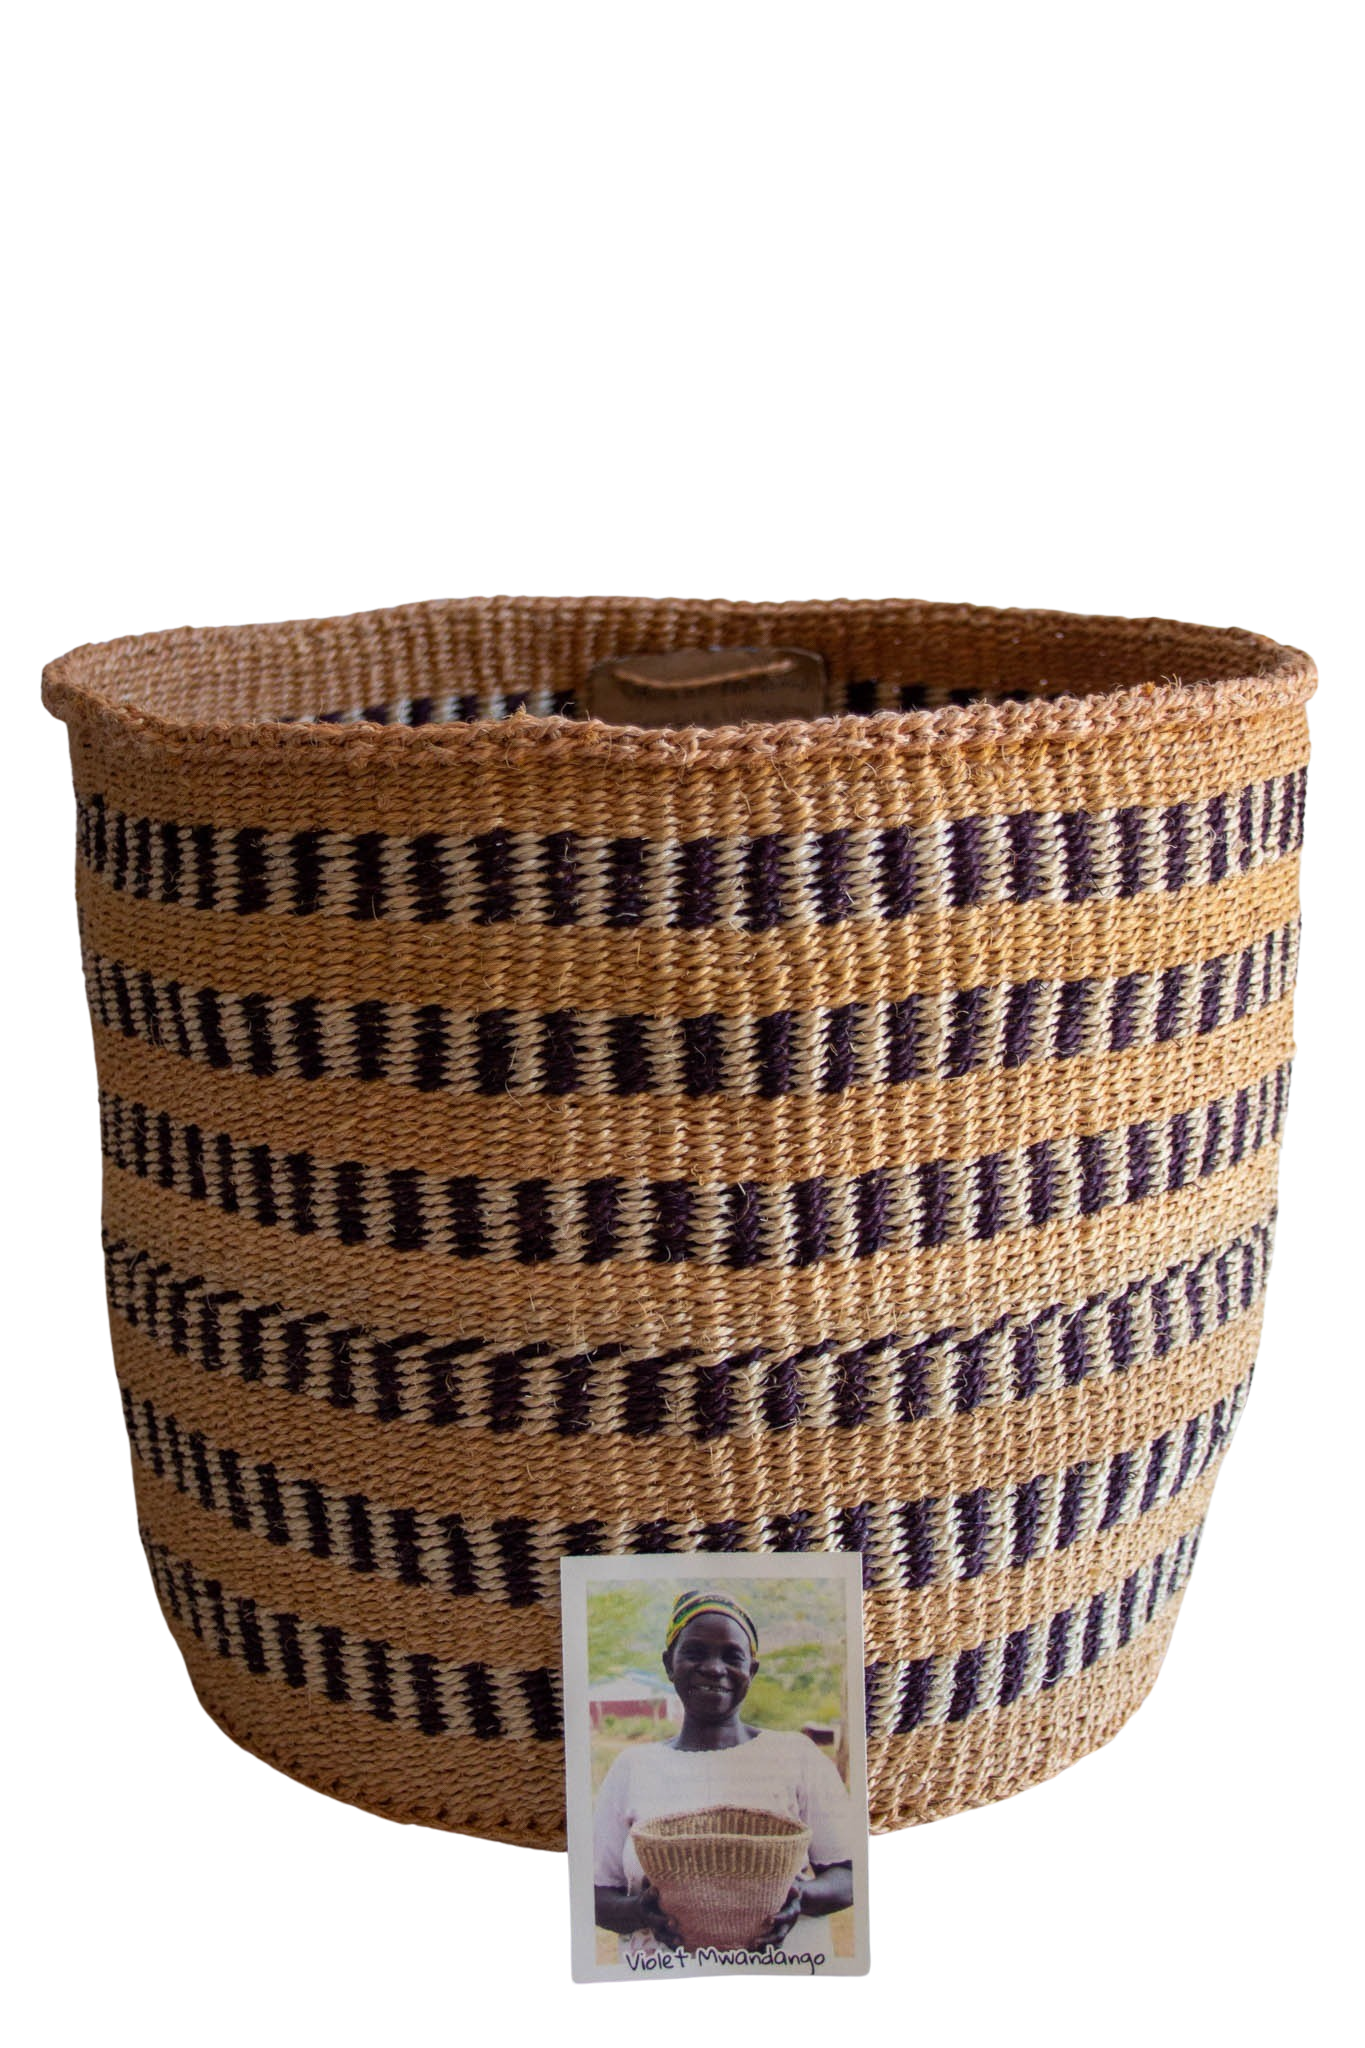 Ikonge African basket of sisal